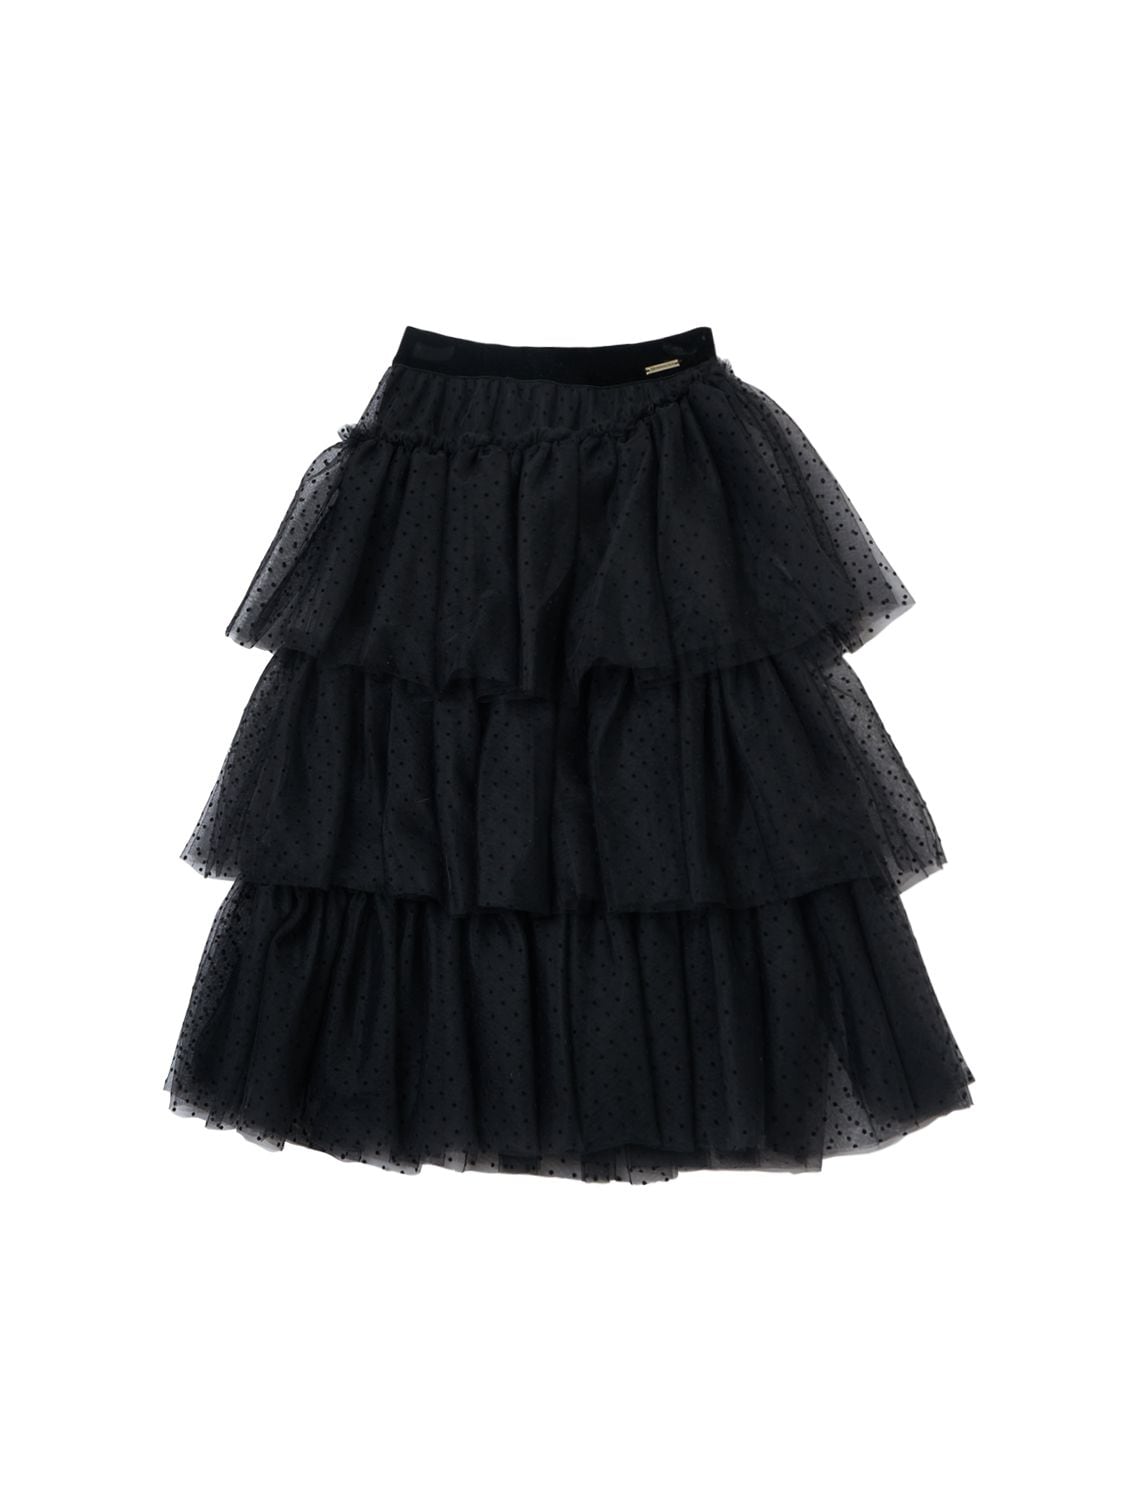 Image of Flocked Polka Dot Tulle Skirt